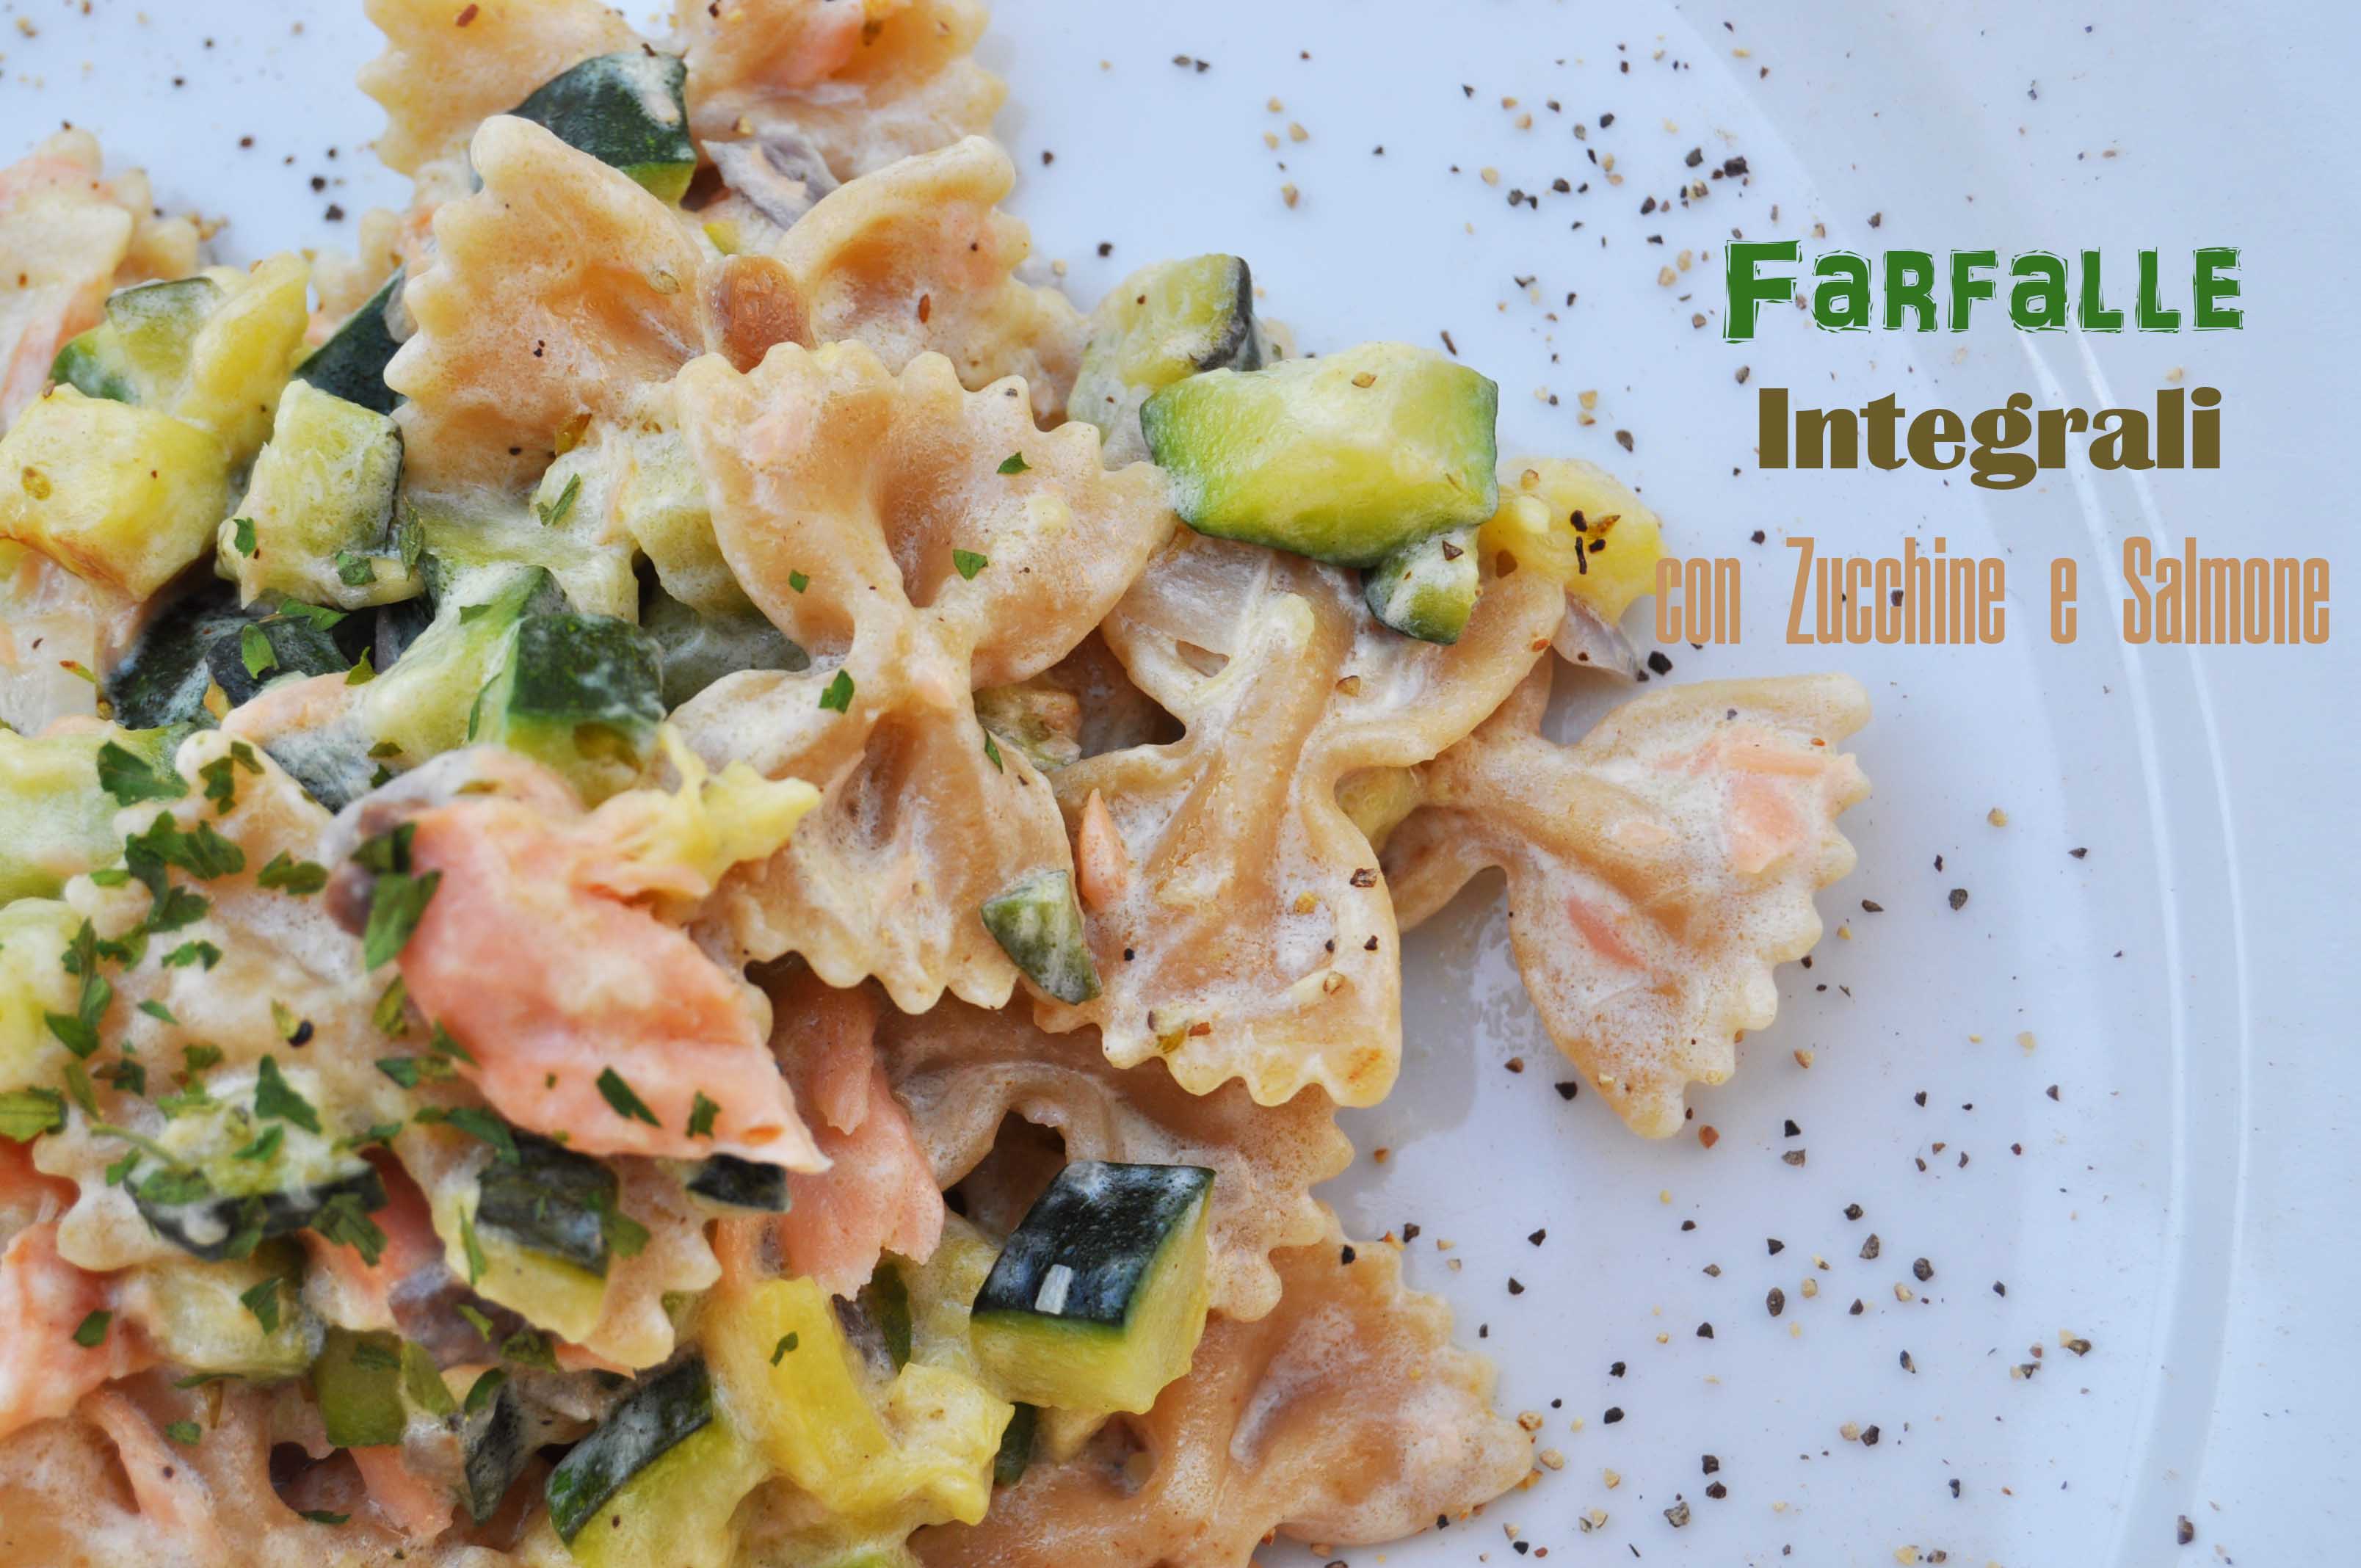 Farfalle integrali con zucchine e salmone affumicato – Cook and Love